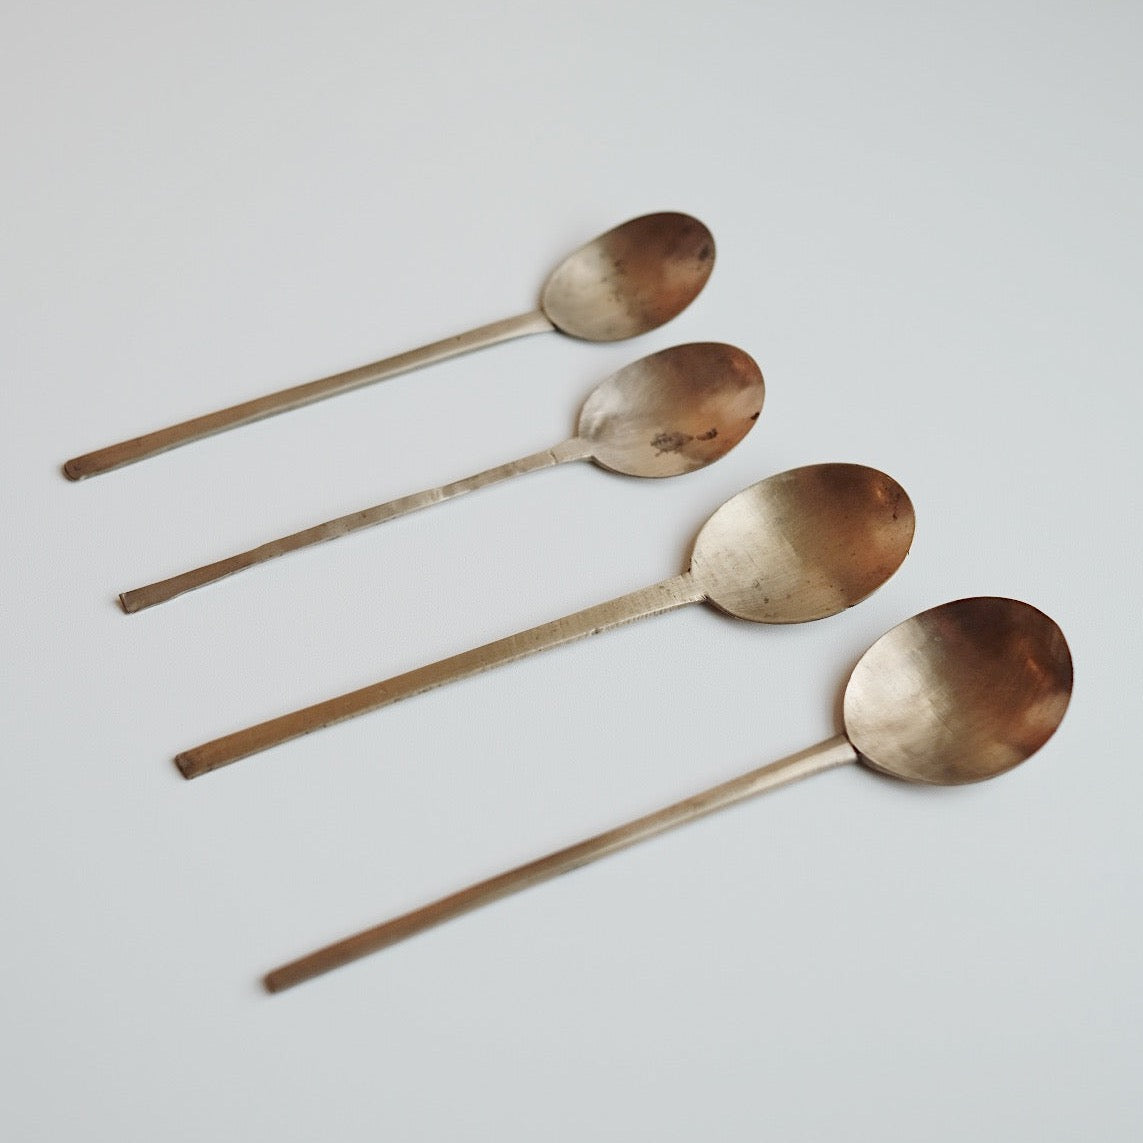 Antique Bangjja Spoon